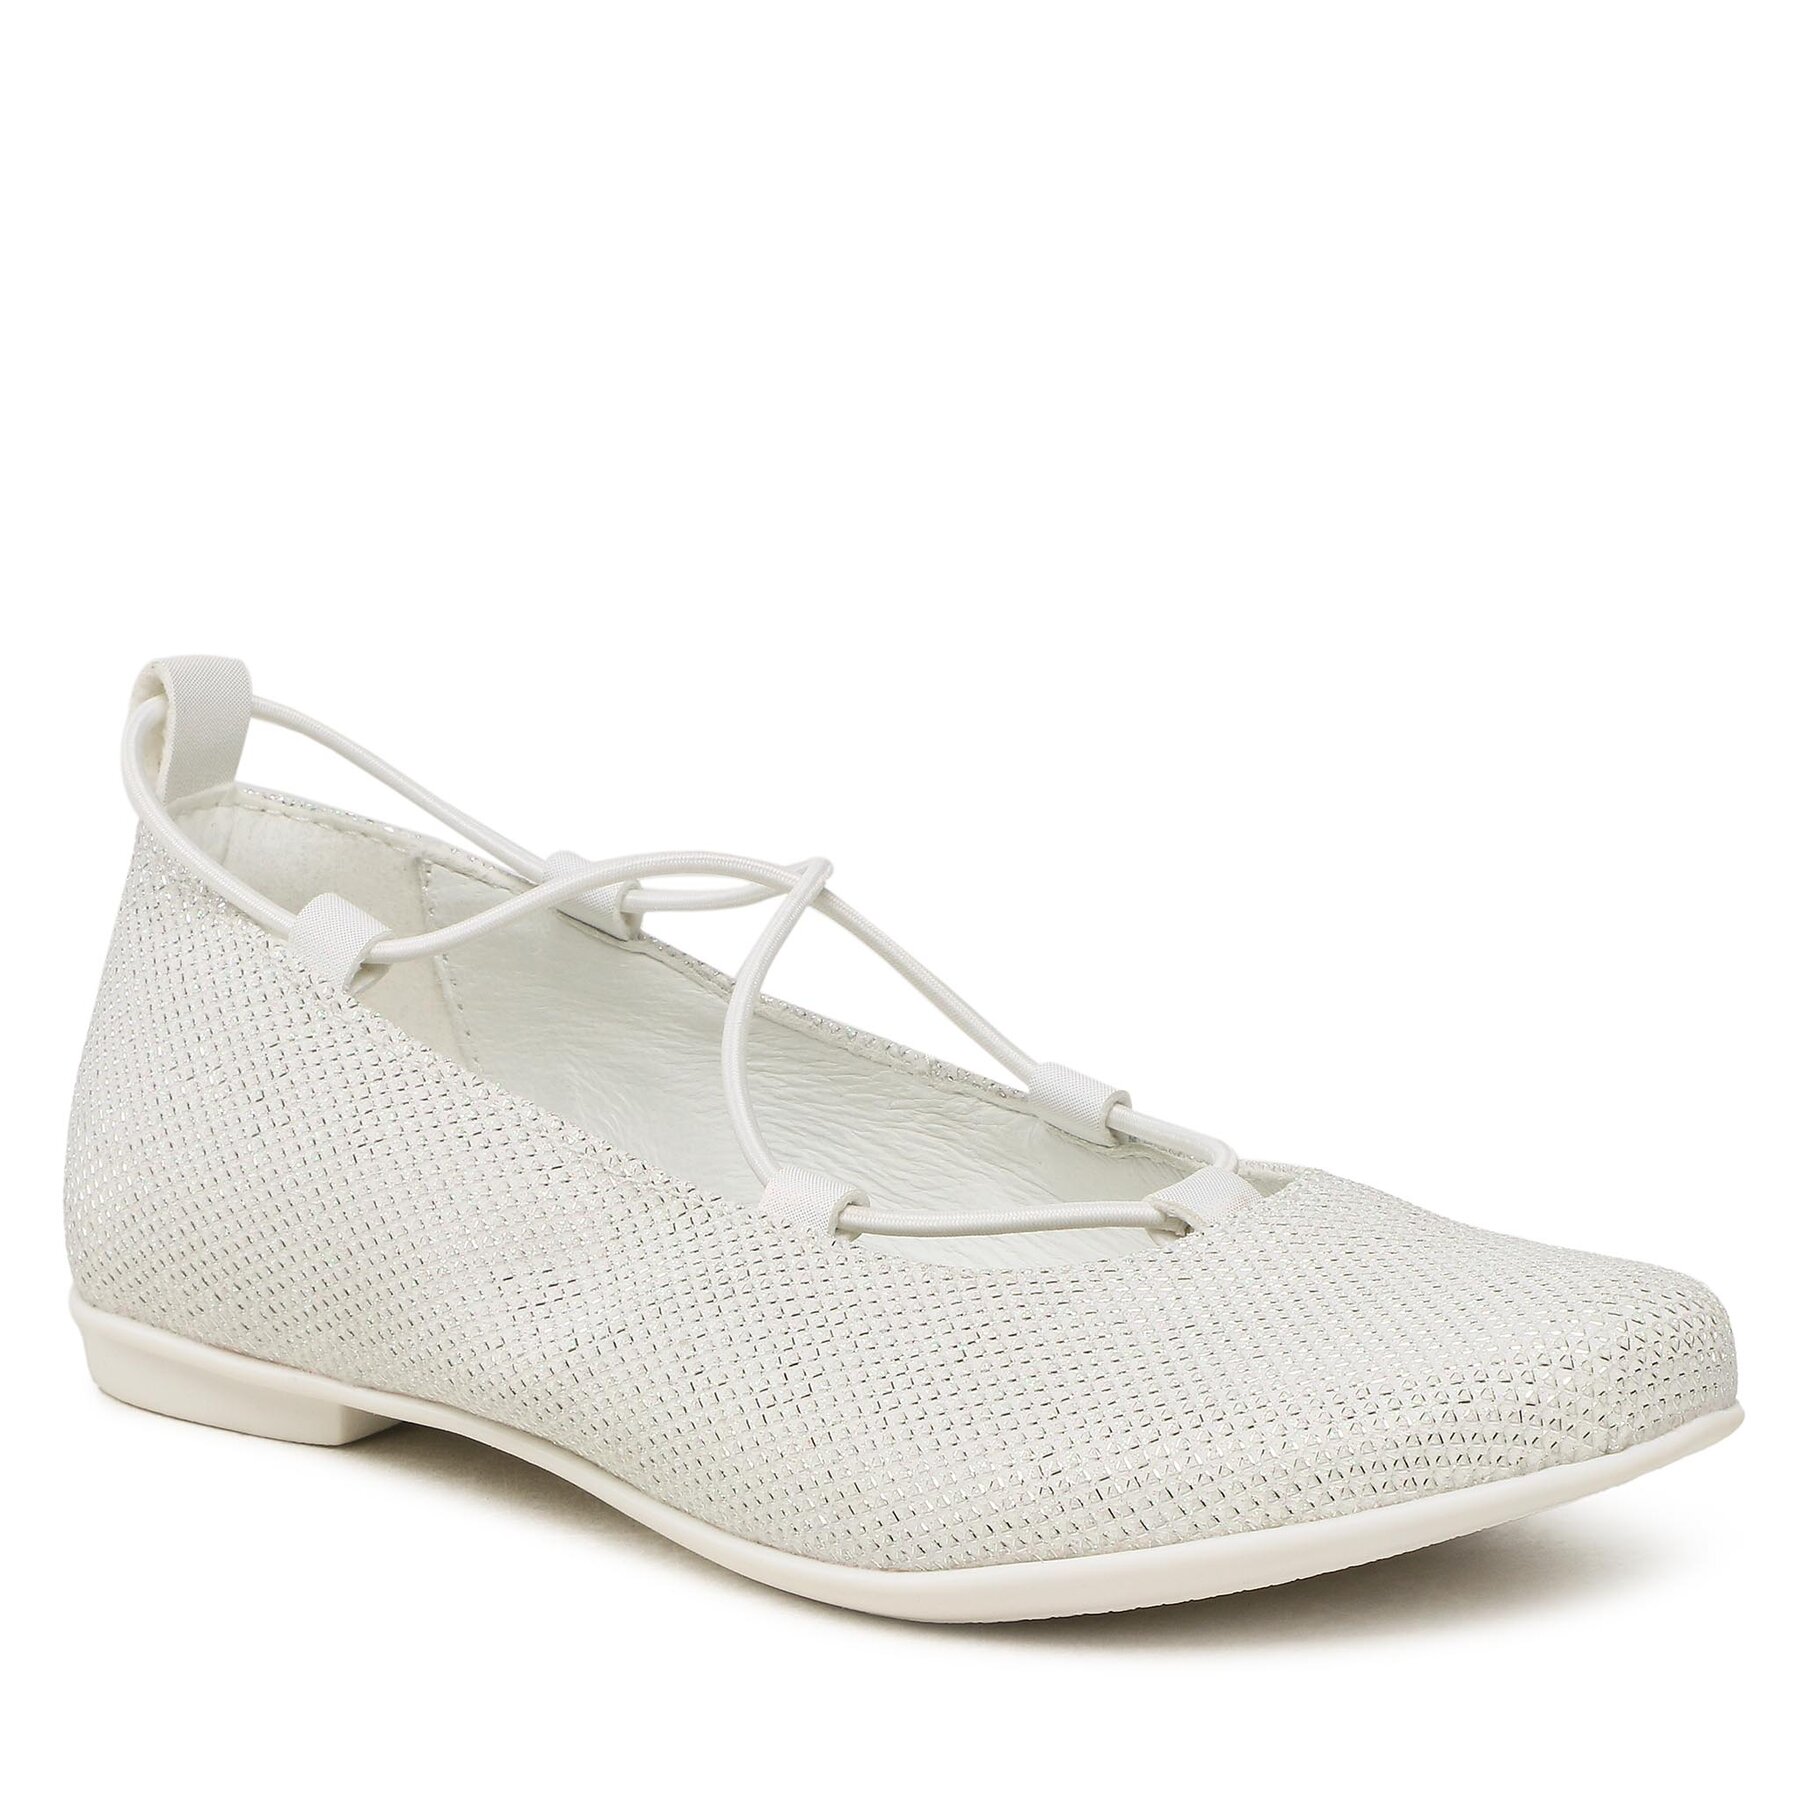 Cipele Primigi 3920500 D Iridescent White